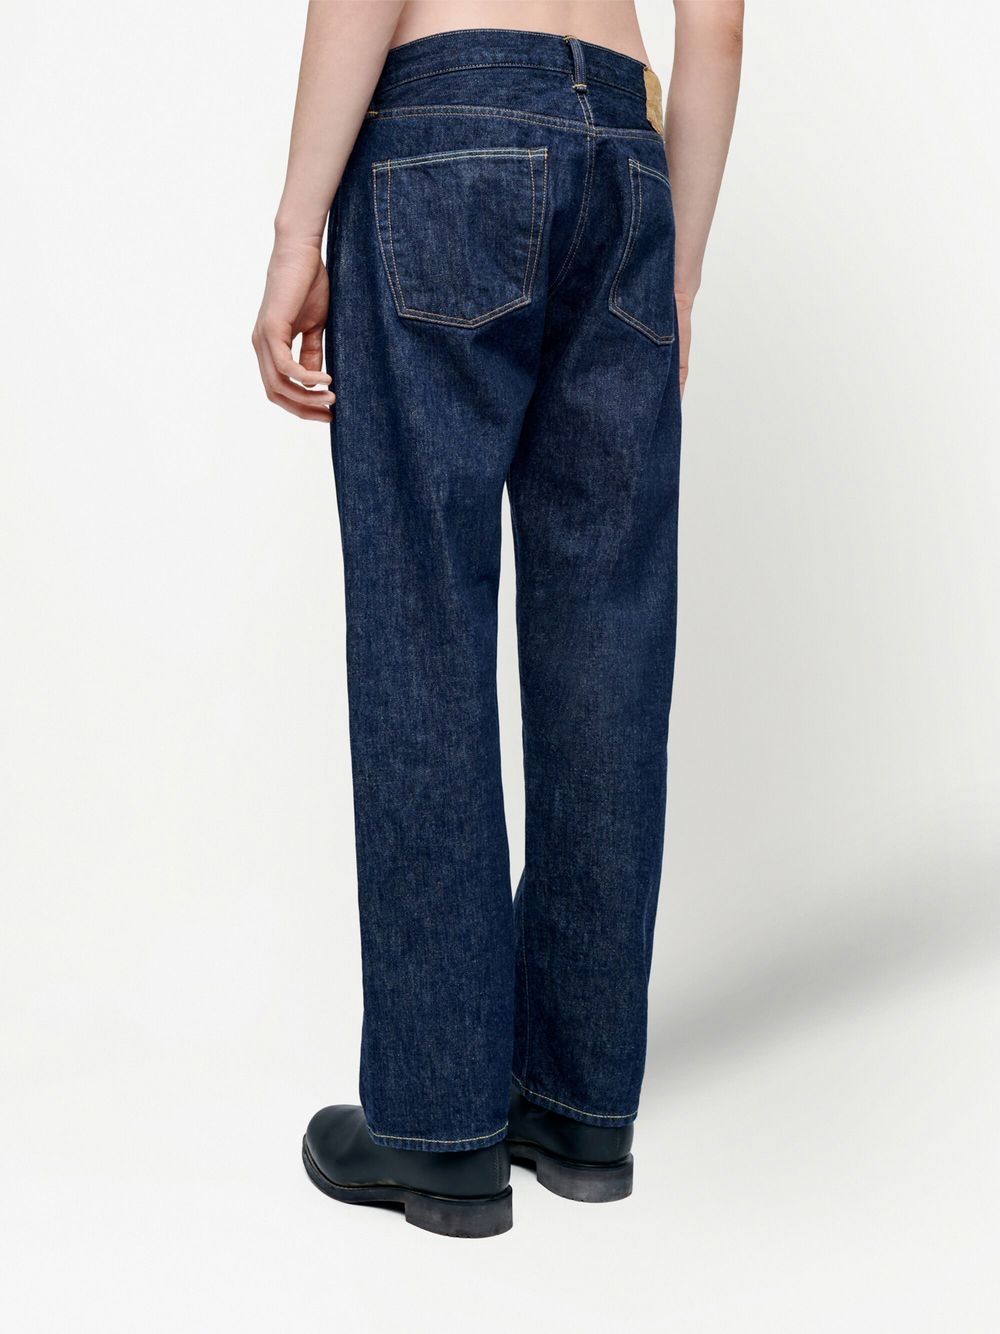 50年代复古风直筒牛仔裤